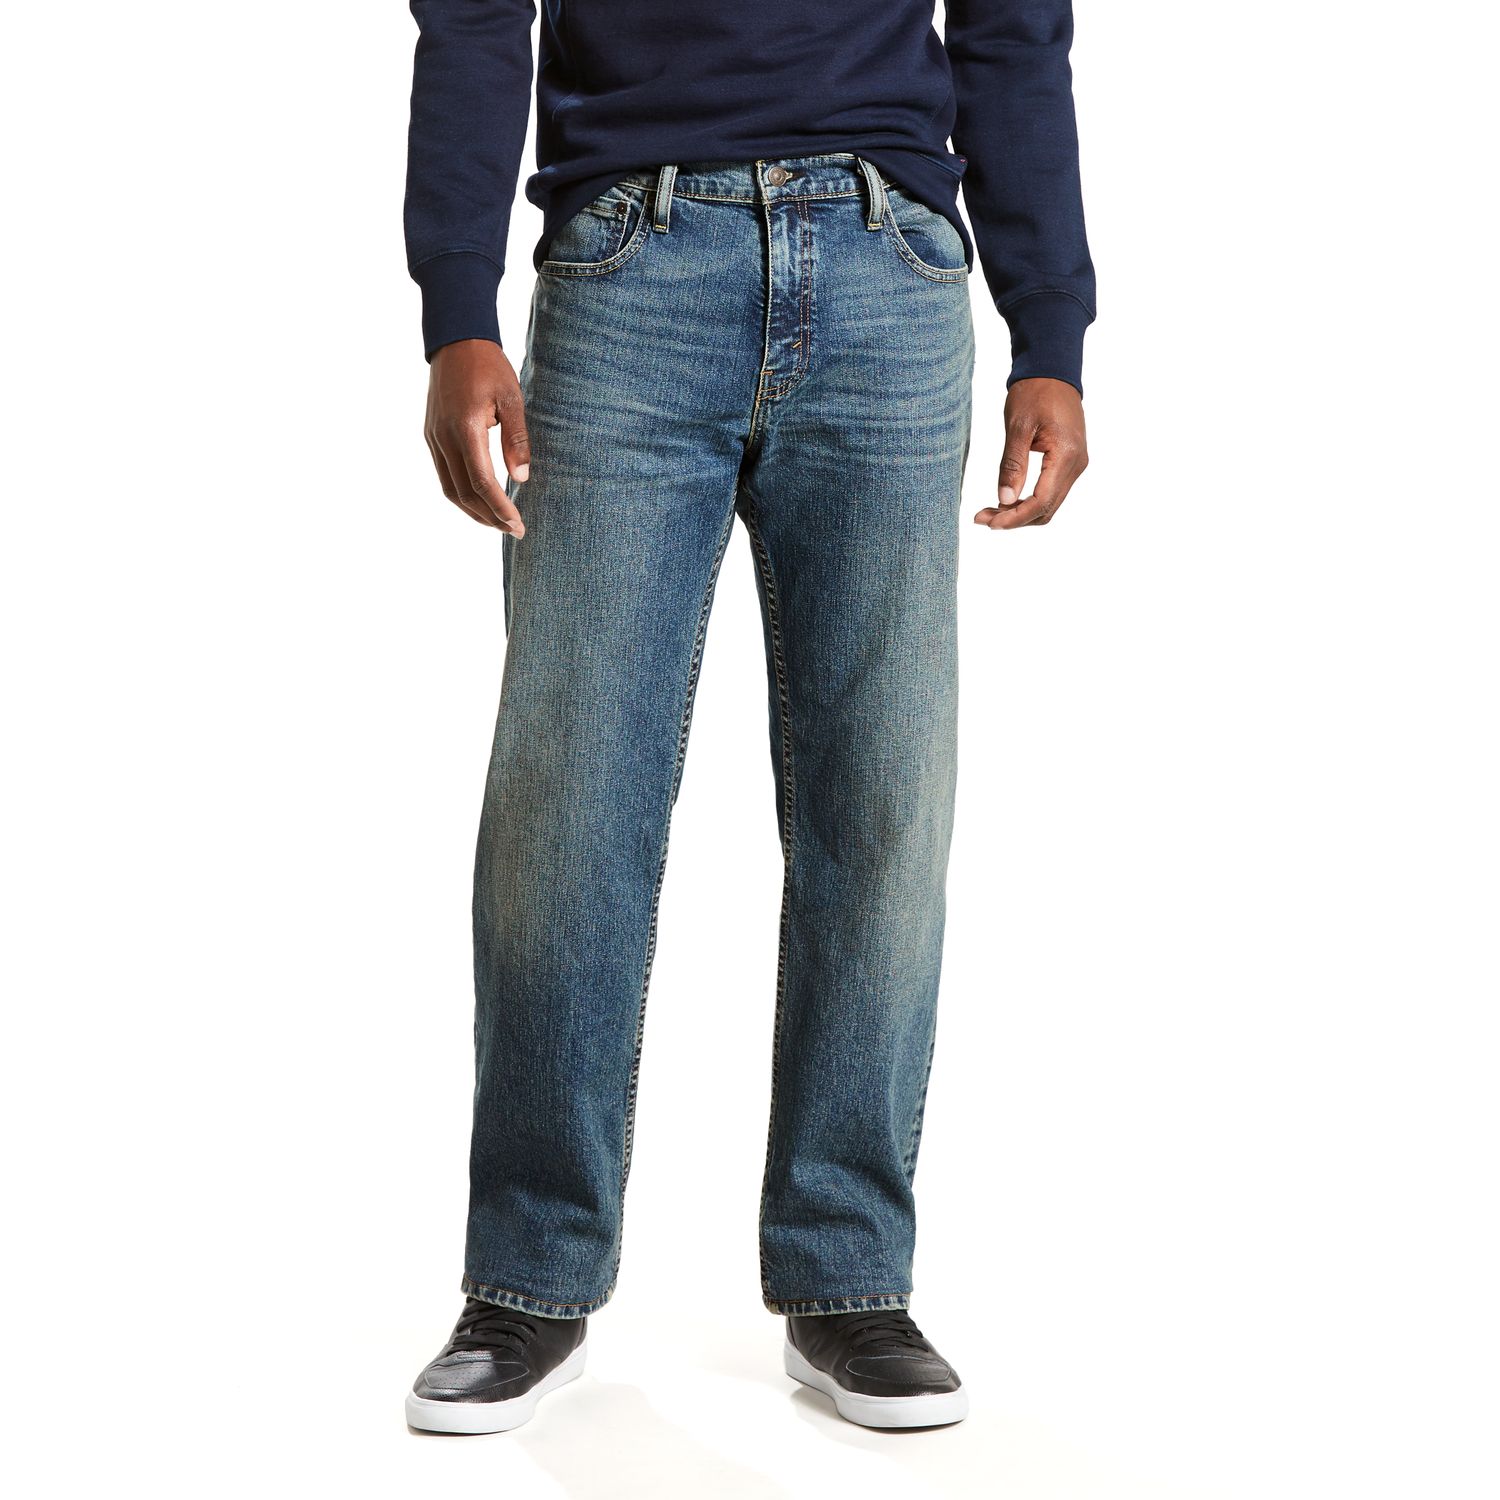 569 stretch jeans